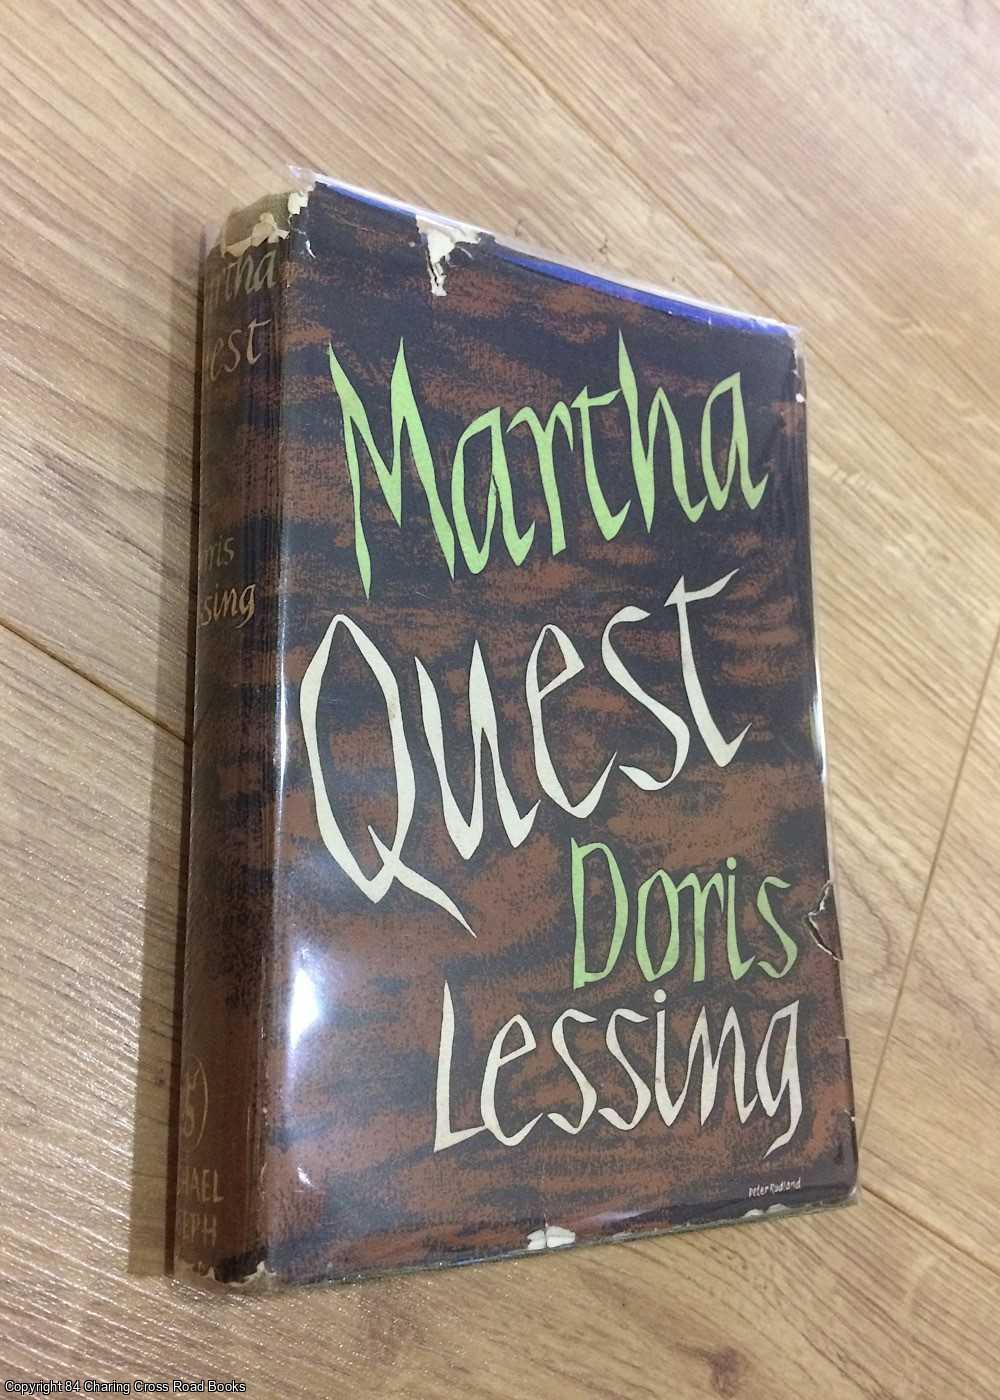 Lessing, Doris - Martha Quest